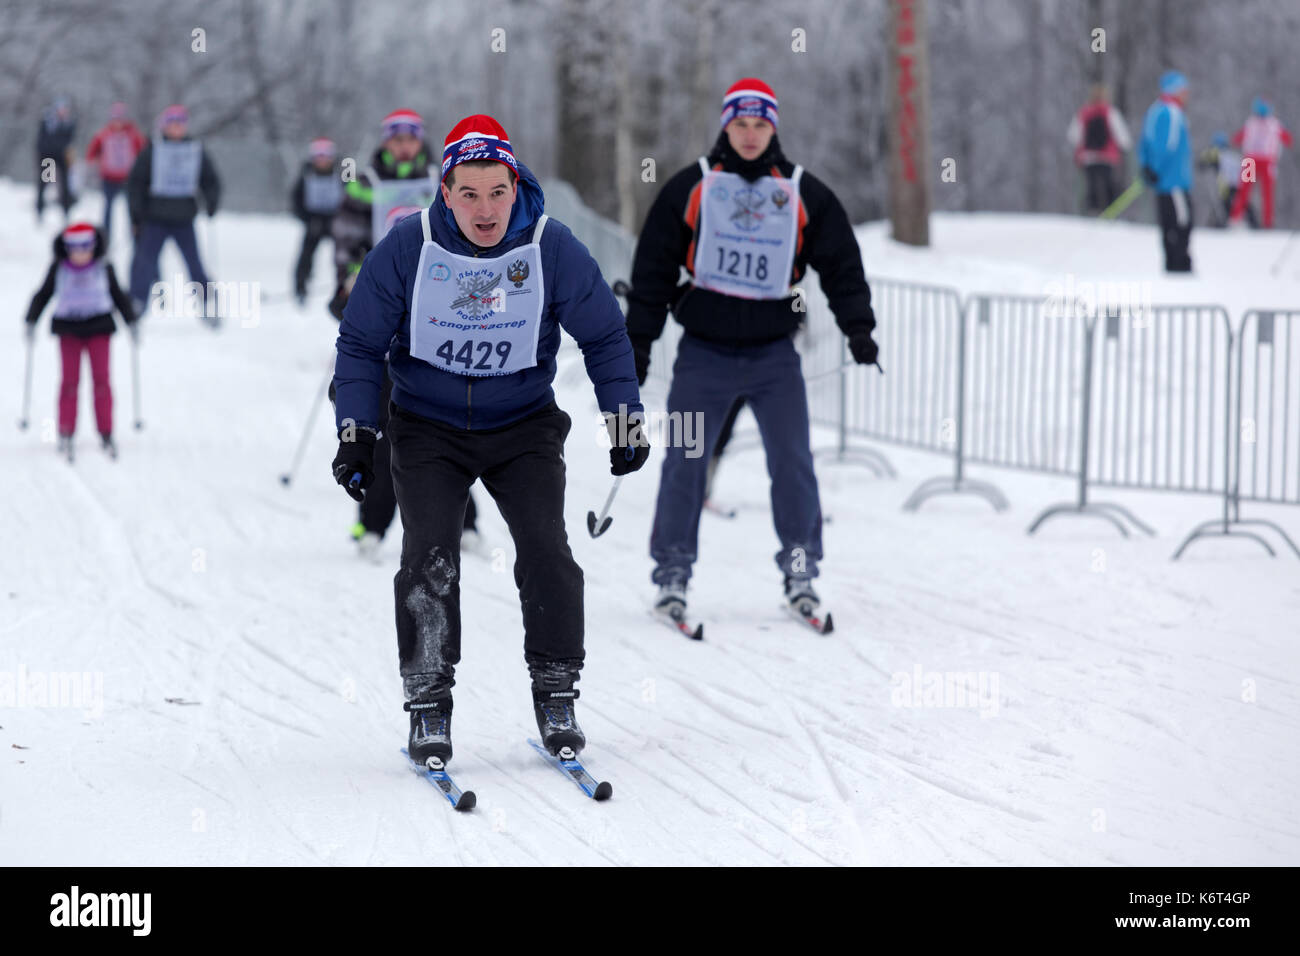 San Pietroburgo, Russia - 11 Febbraio 2017: persone che partecipano in massa la gara di sci in pista di sci della Russia durante il concorso. La gara si terrà ann Foto Stock